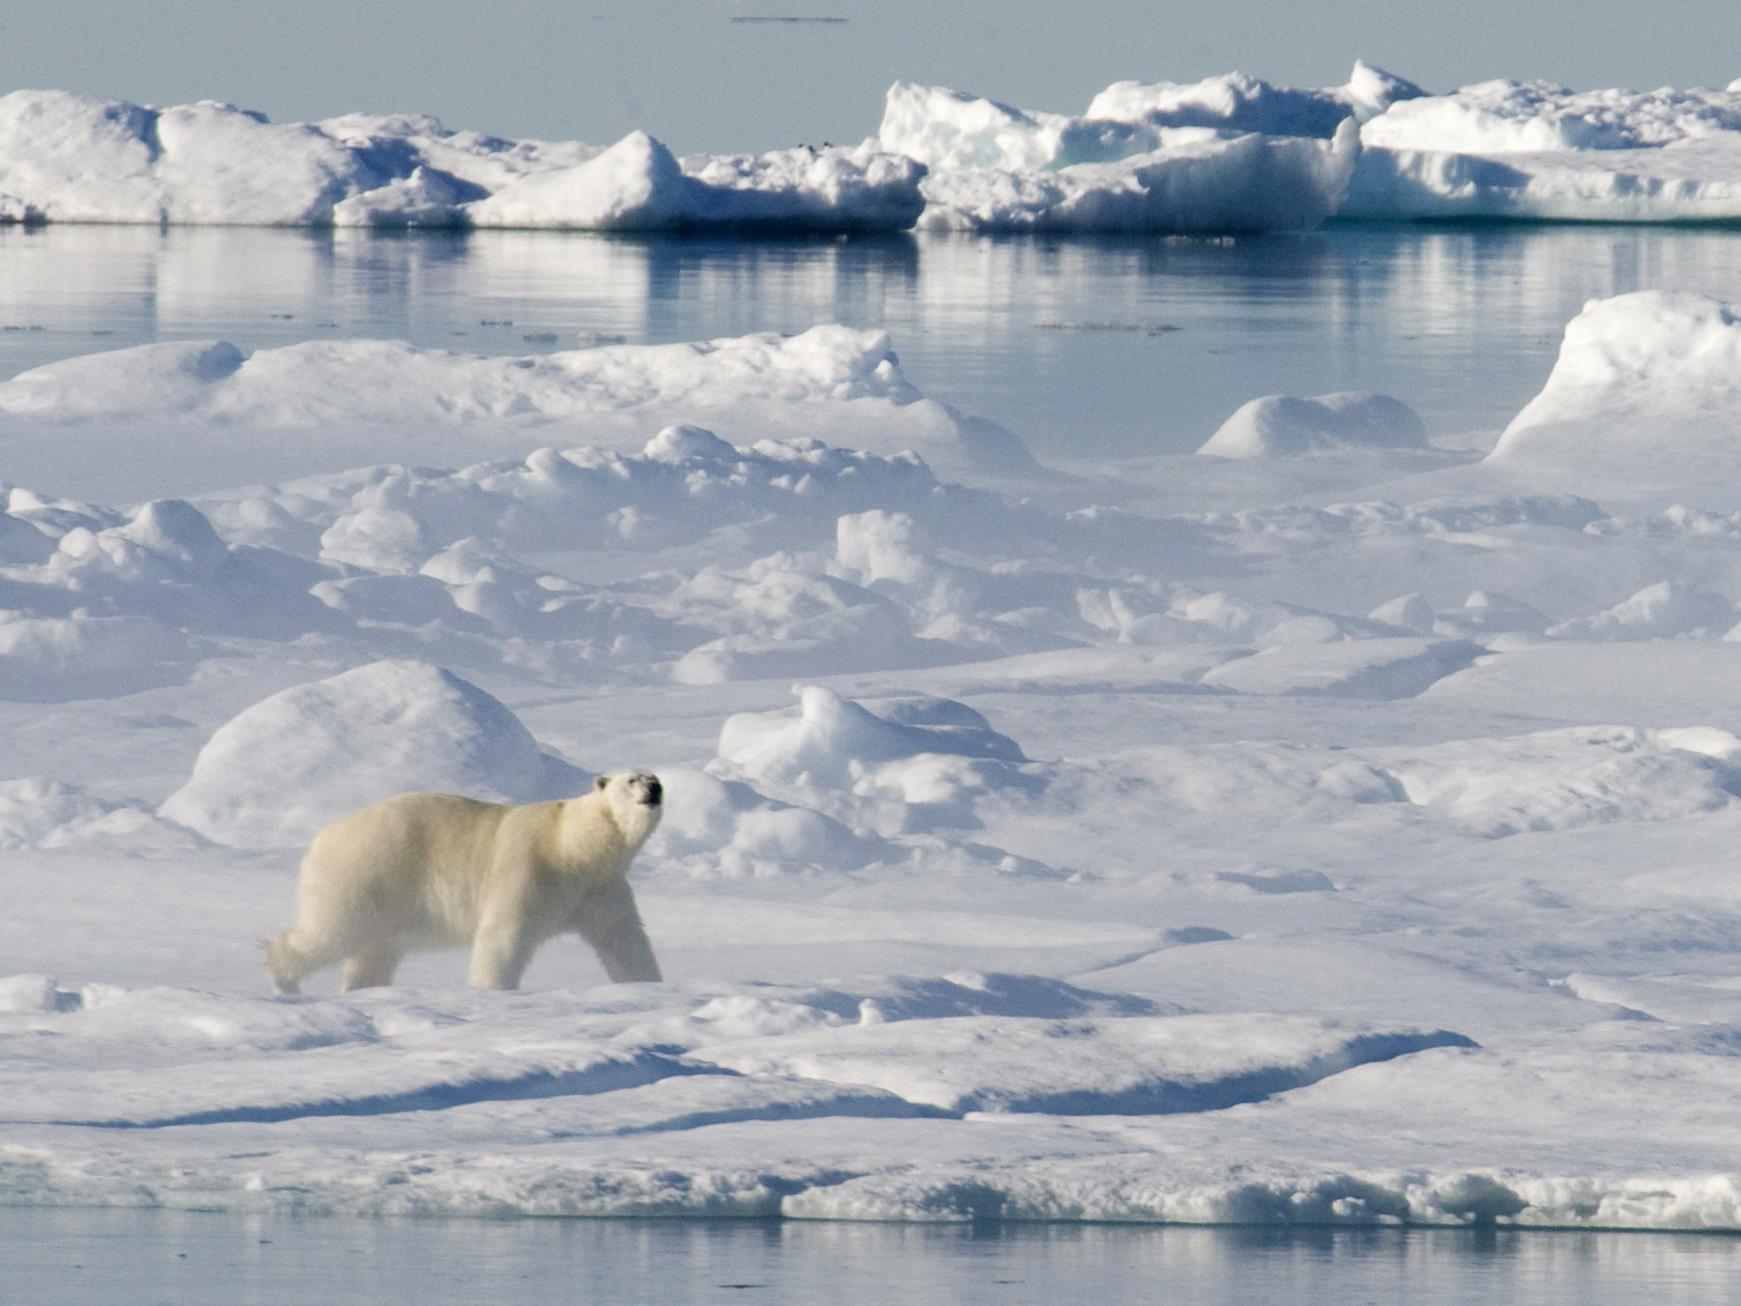 Das Eis für diesen Eisbären wird wohl weiter schmelzen.